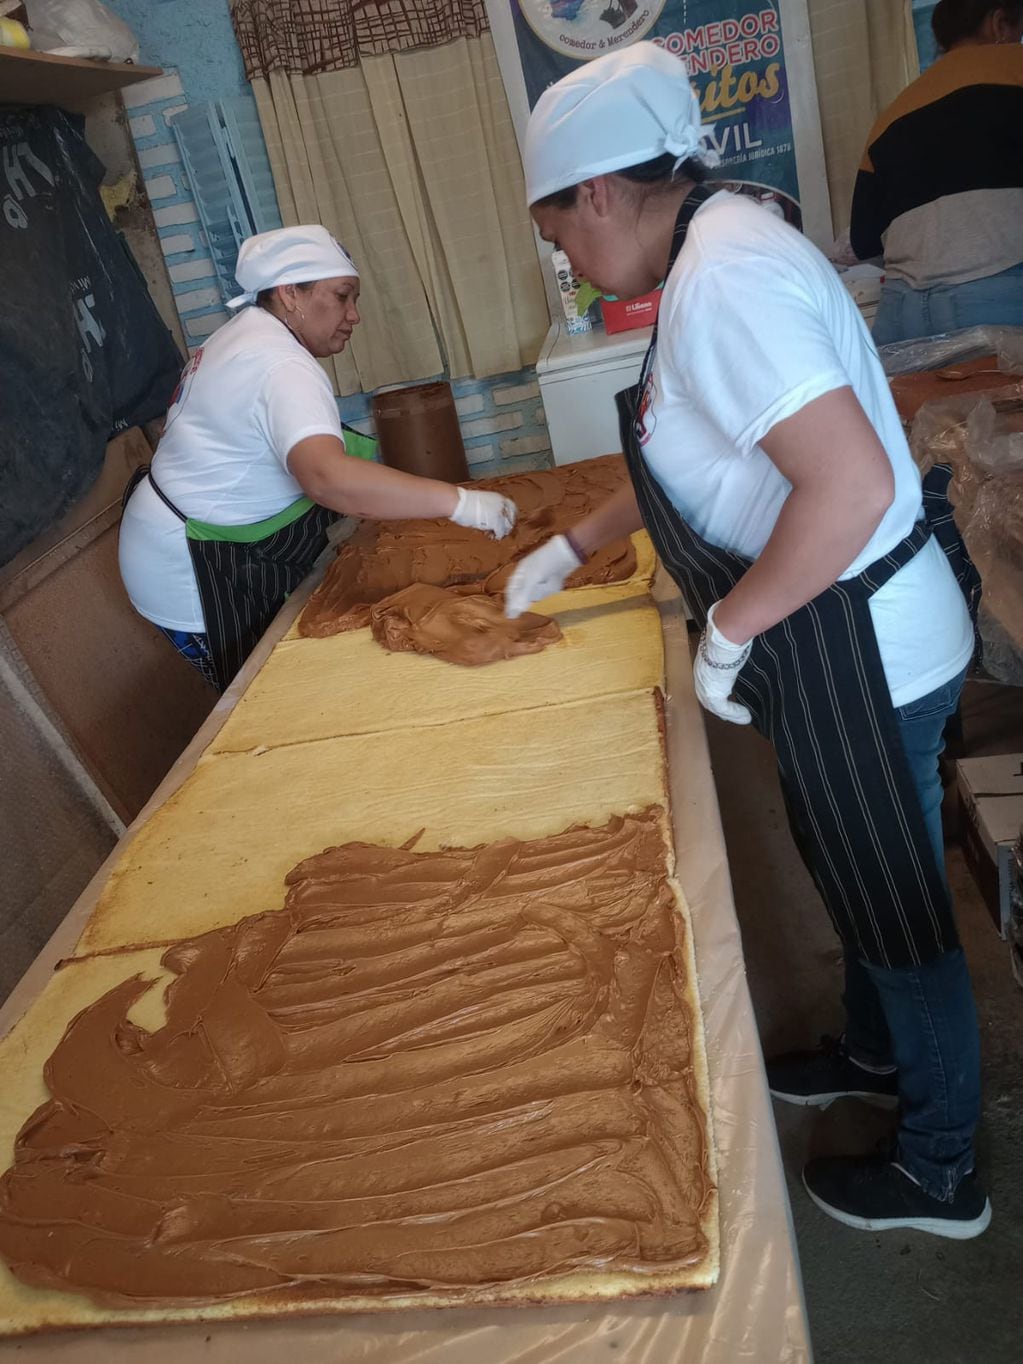 Directo al libro de récords: un comedor de Las Heras preparó una torta de 7 metros y 750 kilos para el Día del Niño. Foto: gentileza Gabriela Carmona.